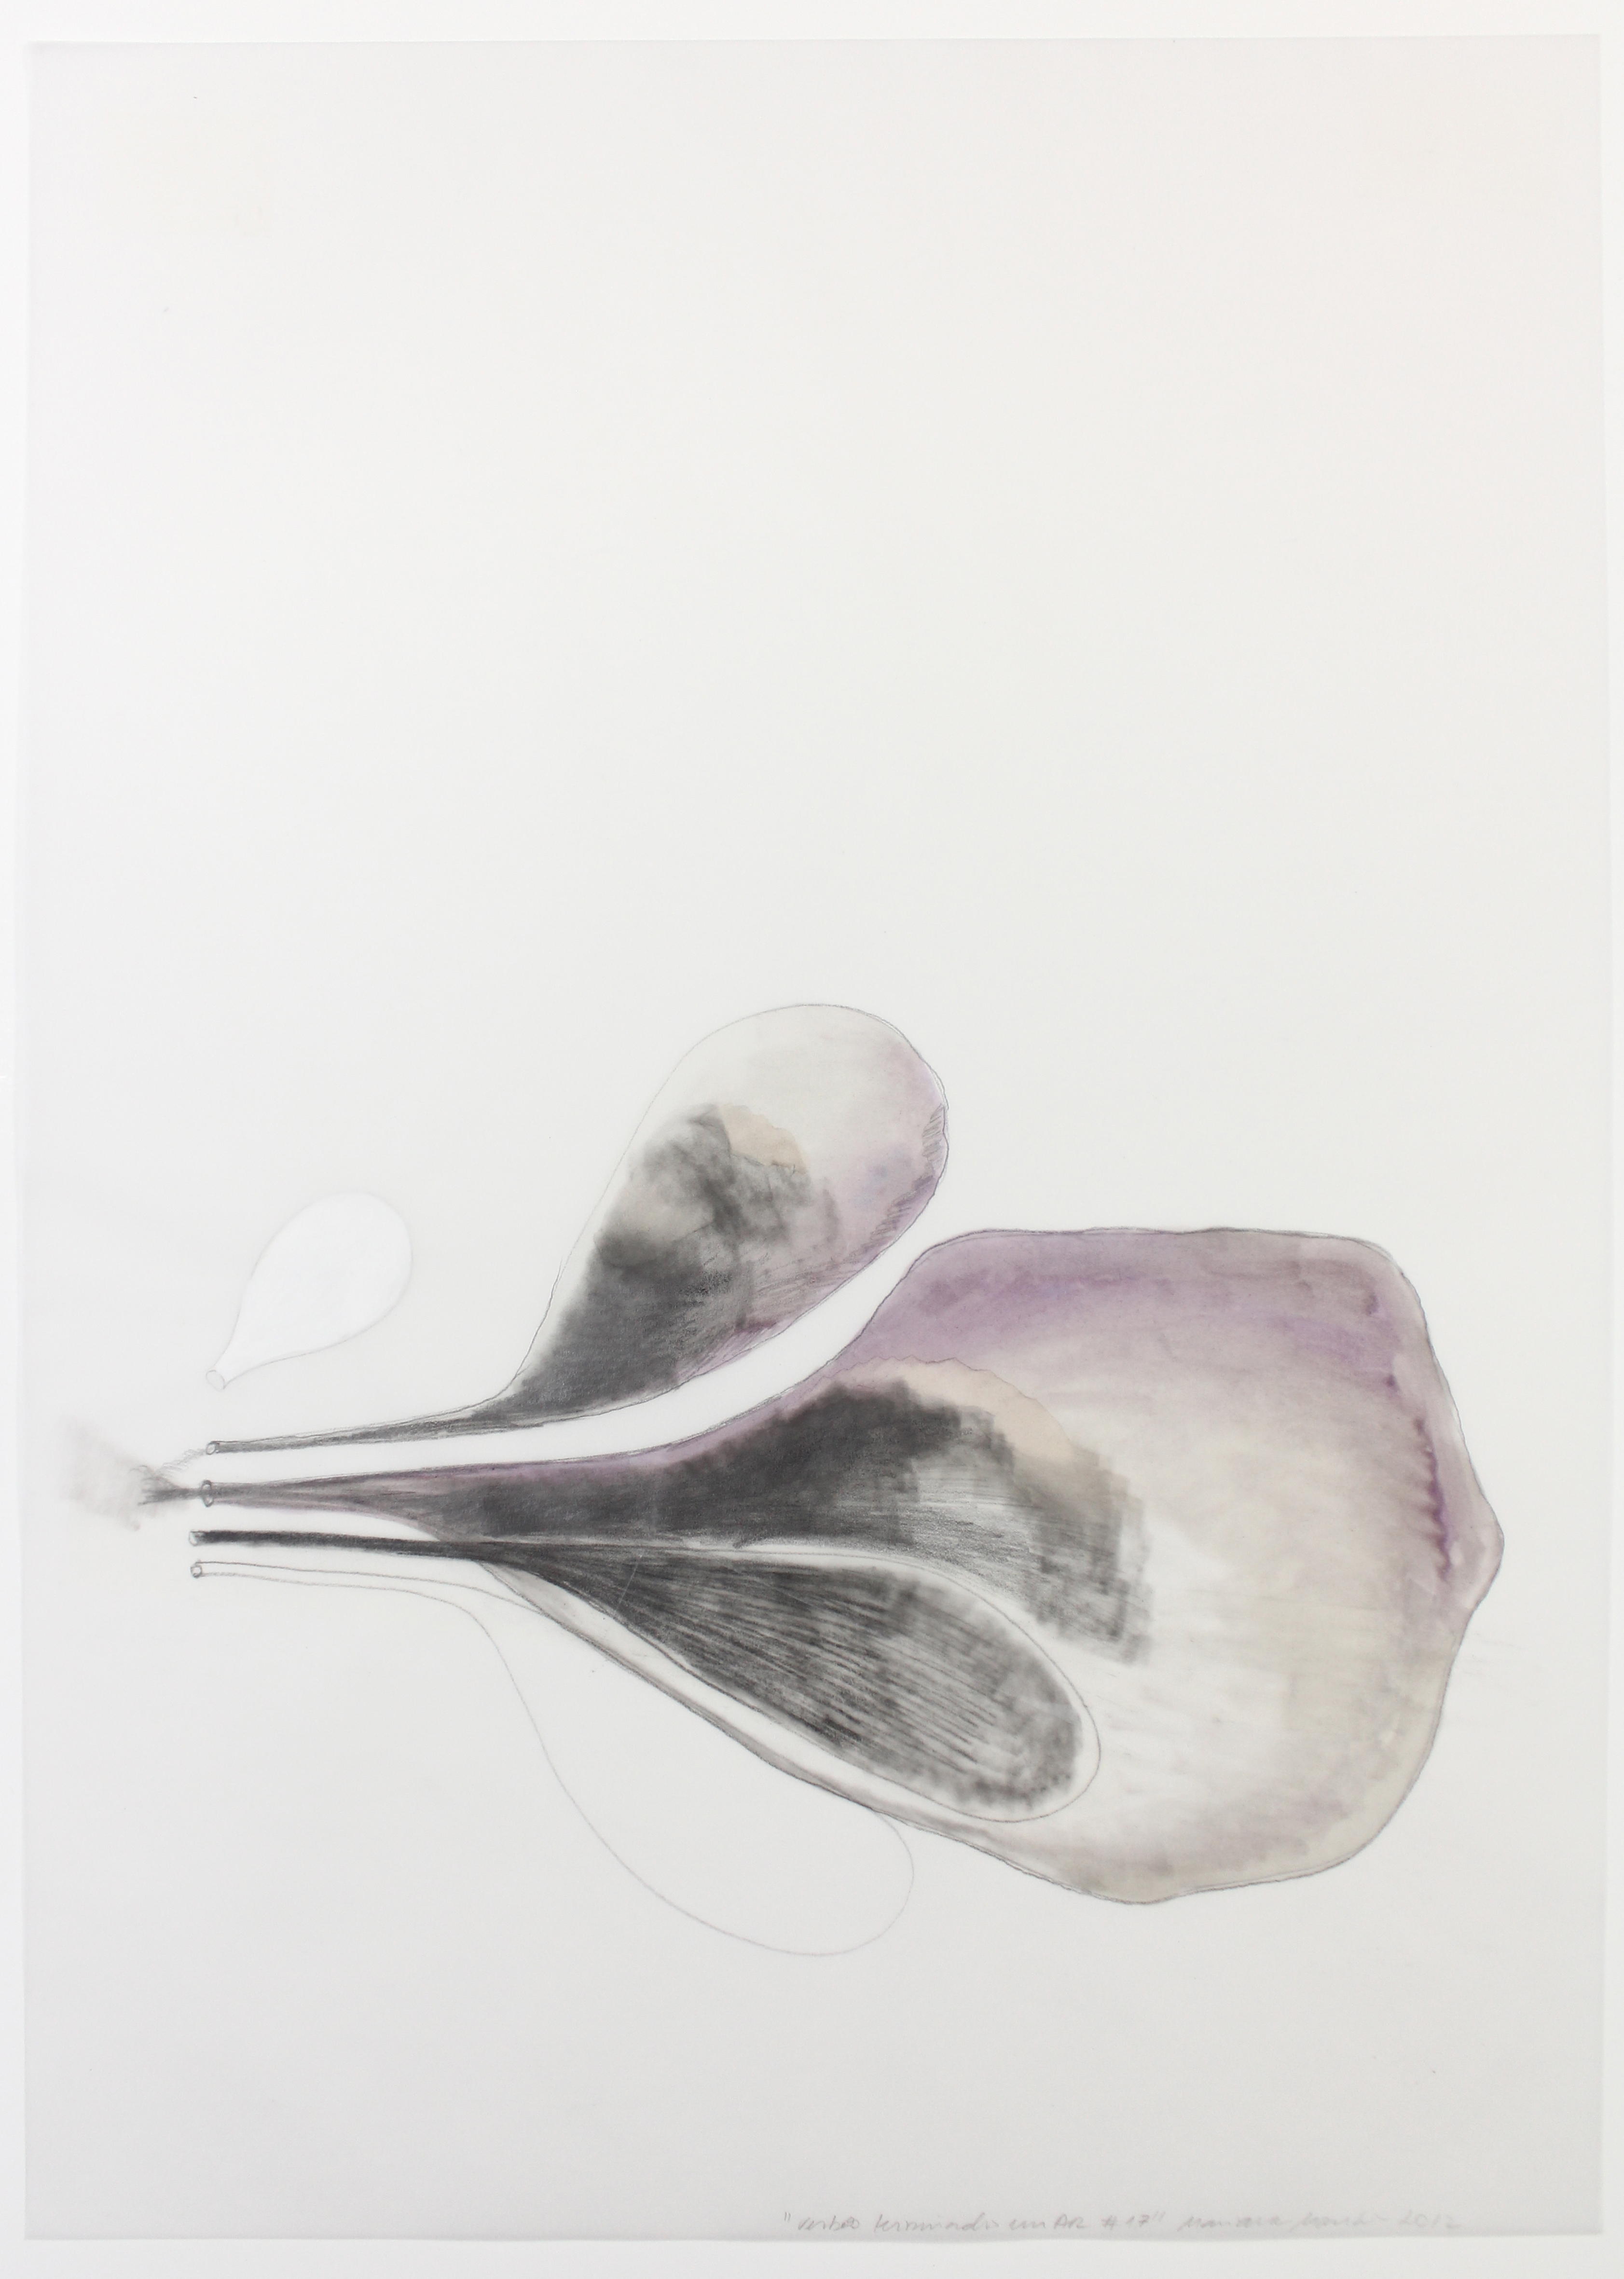 Mariana Manhães, Verbos Terminados em AR # 17, Lápis, marcador, fita dupla face, líquido corretivo, papel vegetal, 29,7 x 42 cm, 2012.